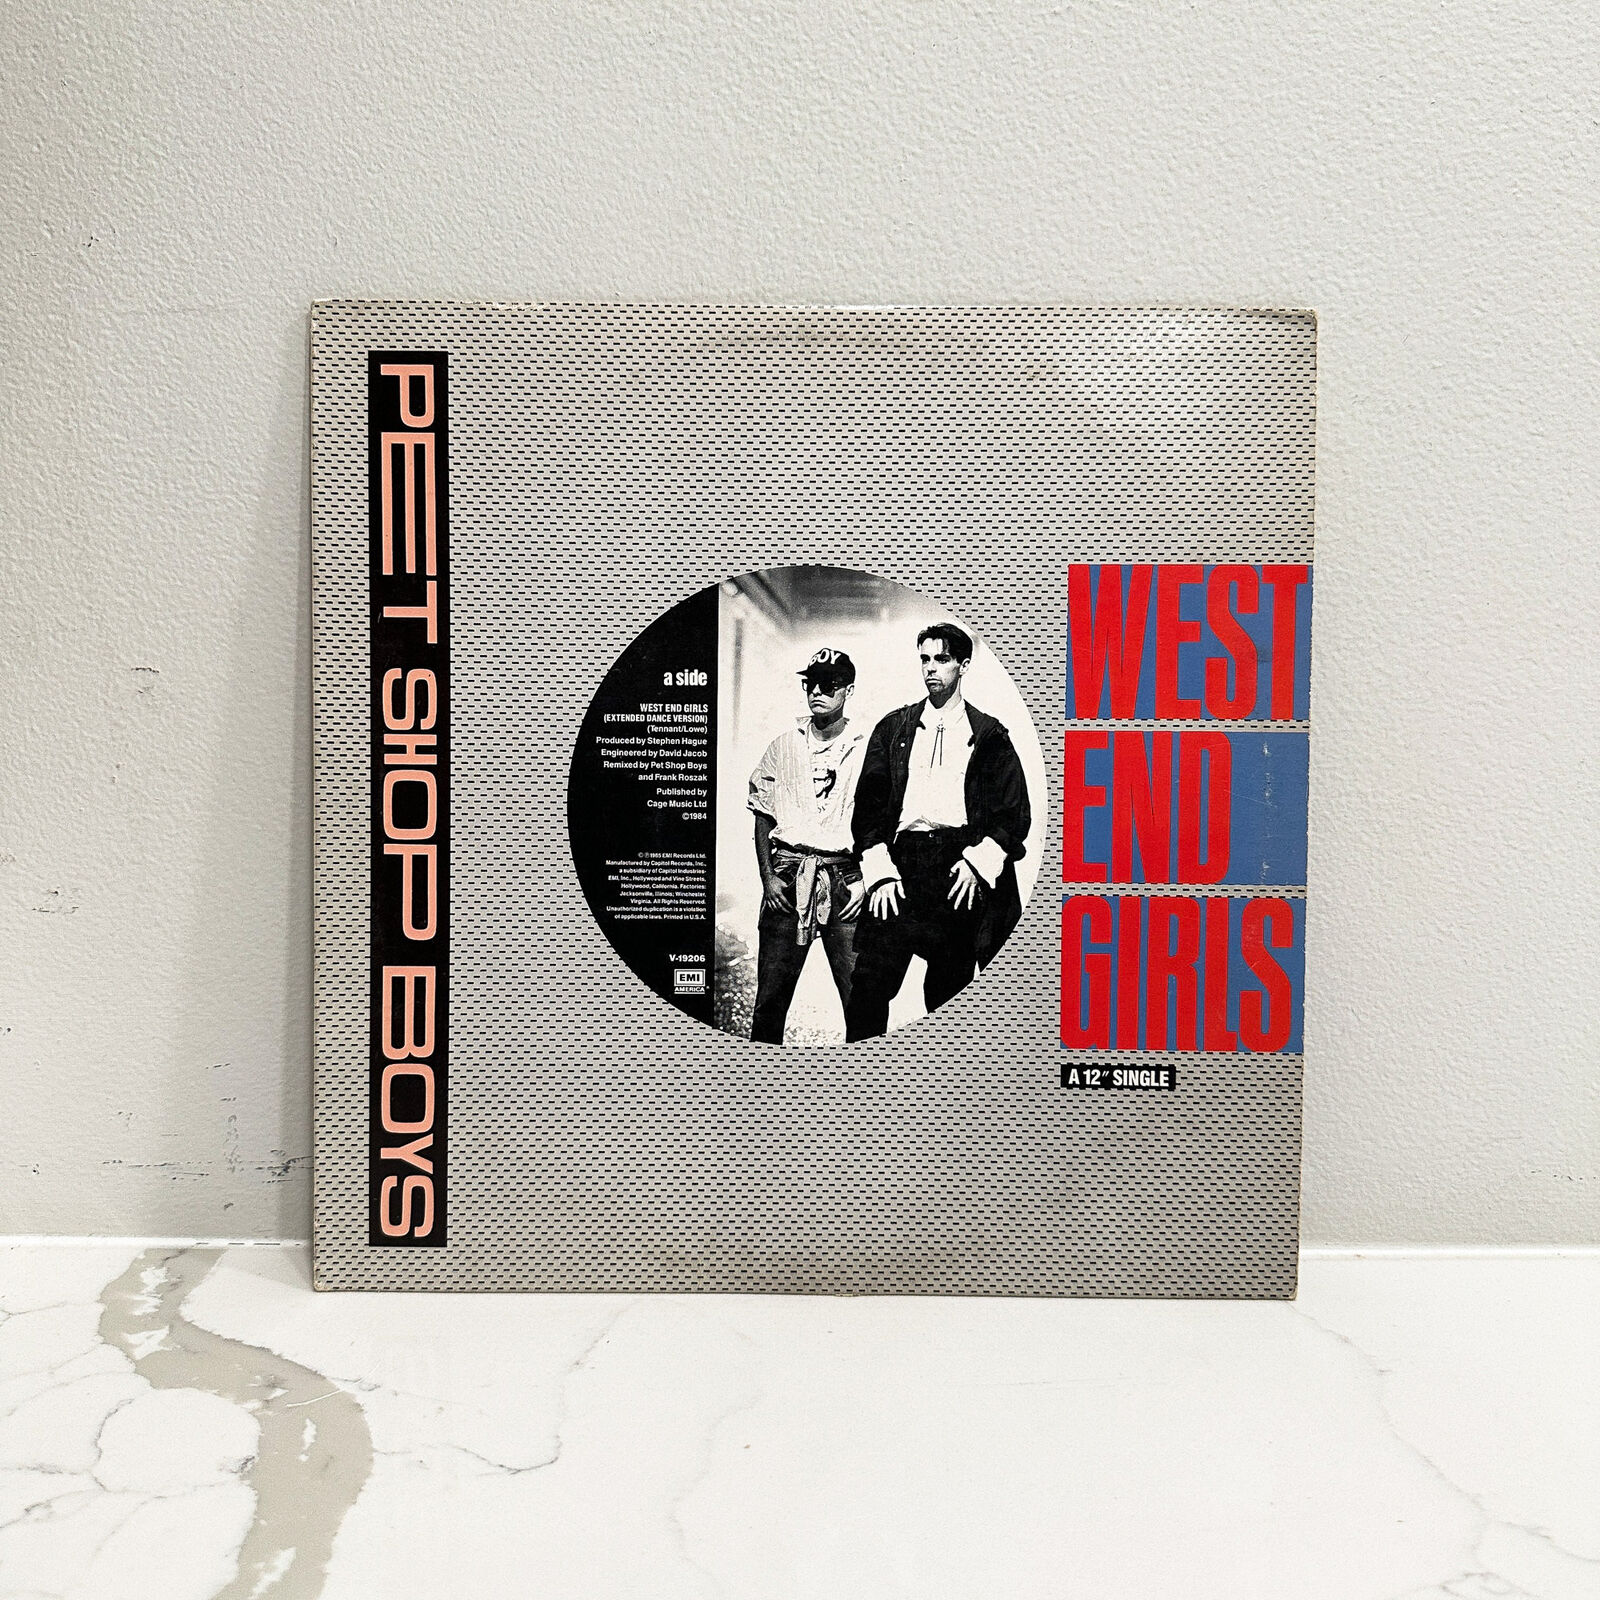 Pet Shop Boys – West End Girls - Vinyl LP Record - 1986